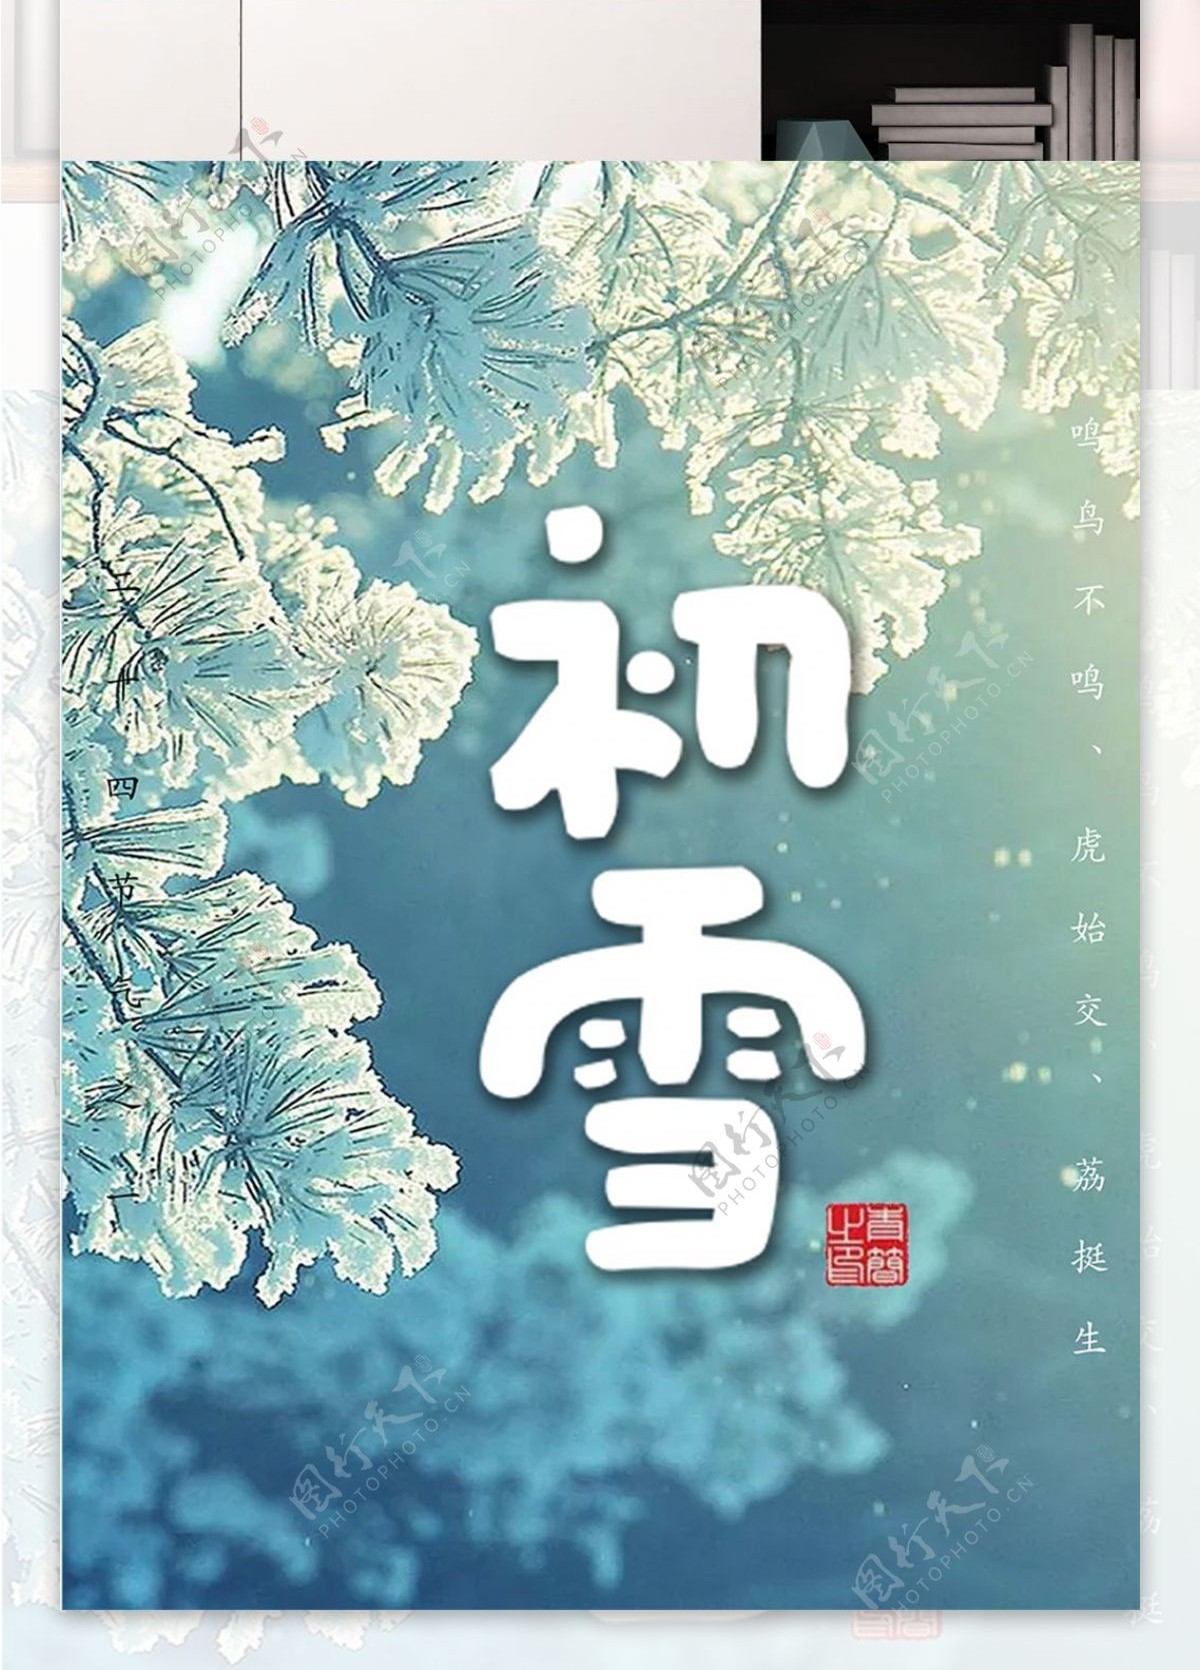 浅蓝色背景简约大气初雪宣传海报